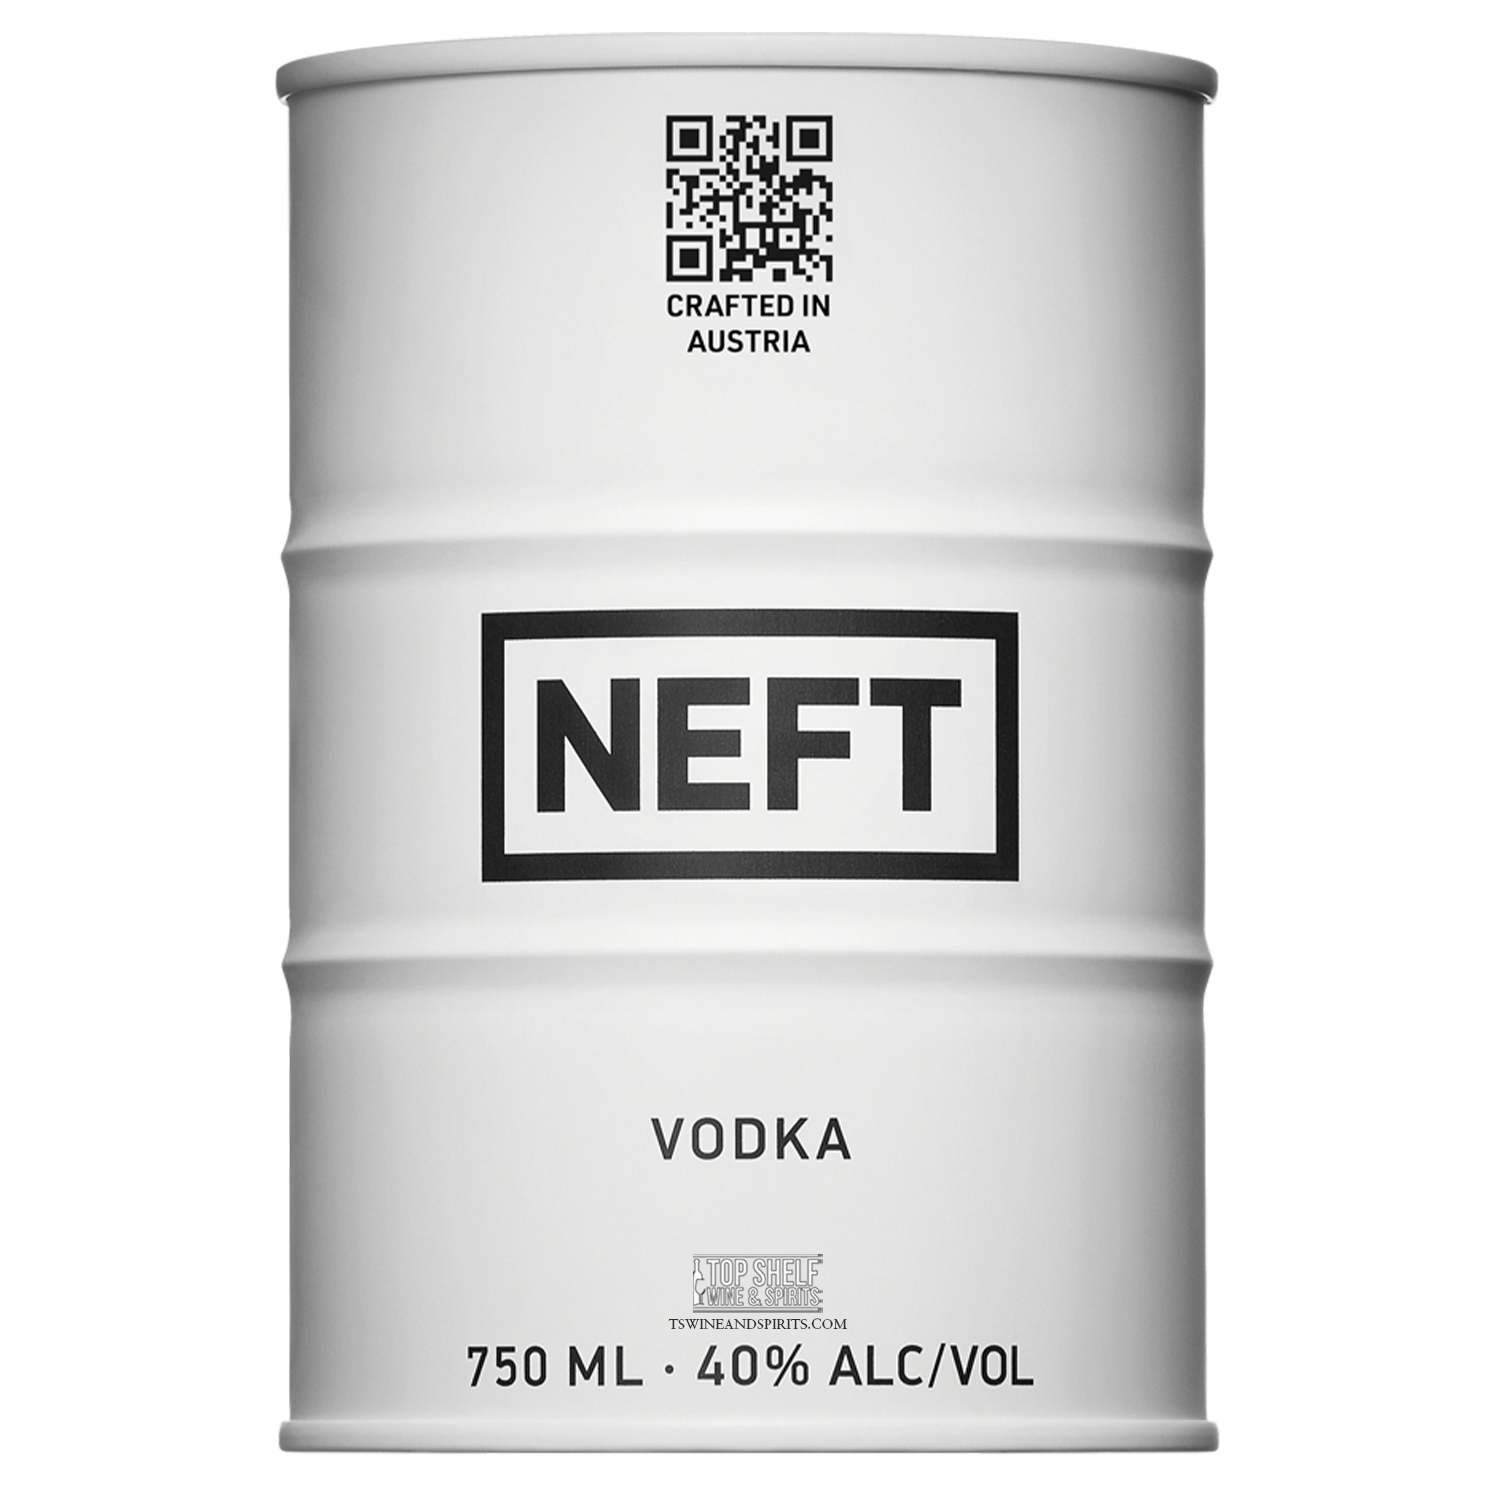 NEFT White Barrel Australian Vodka